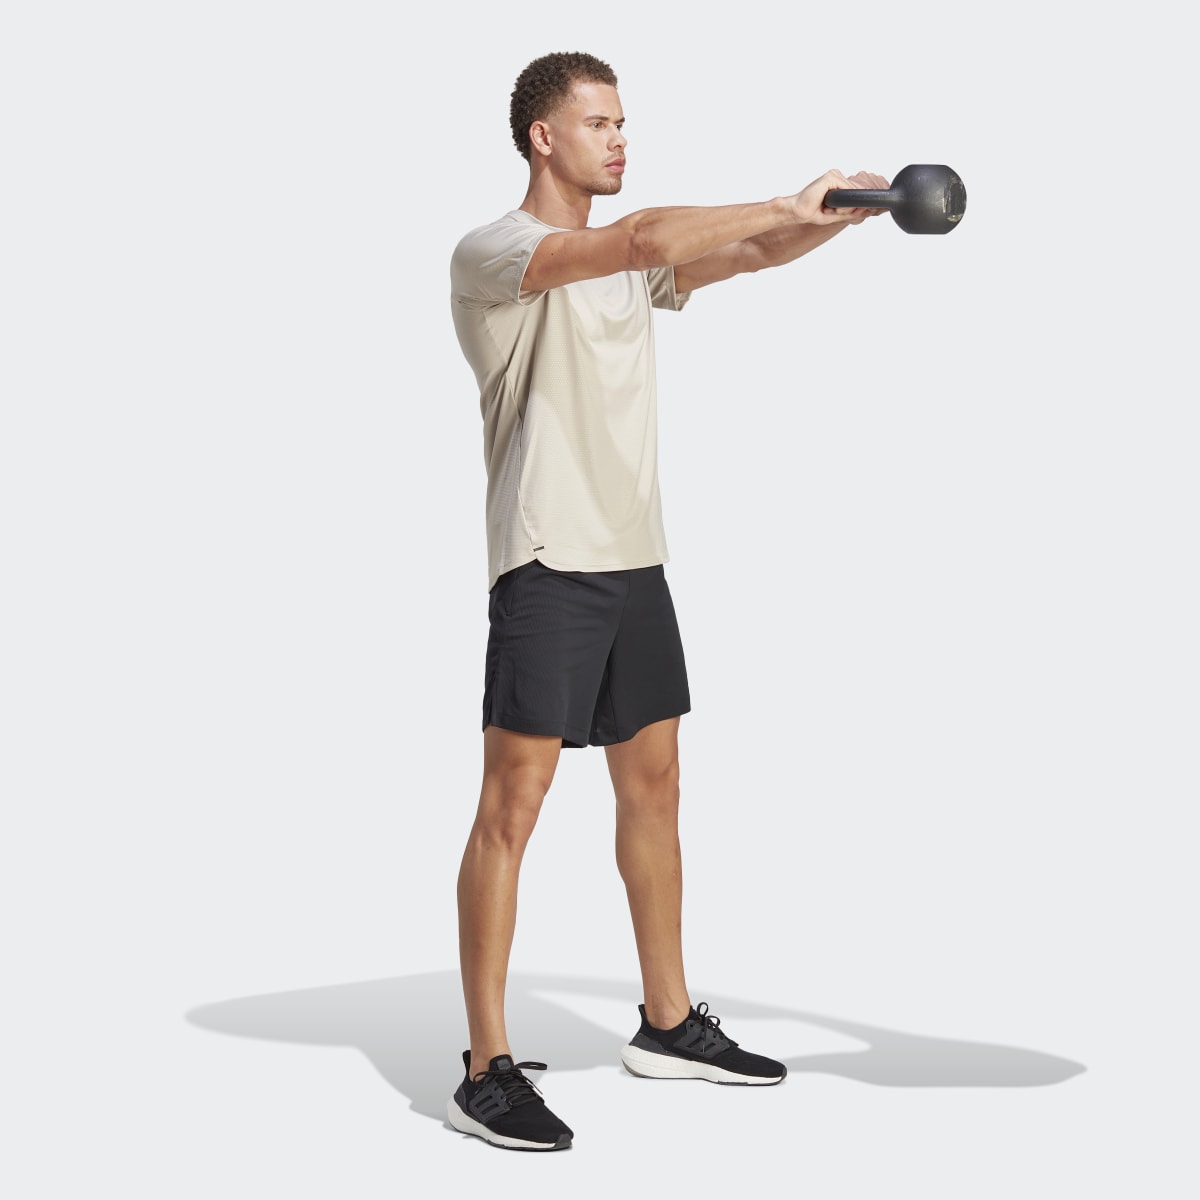 Adidas D4T Strength Workout T-Shirt. 5